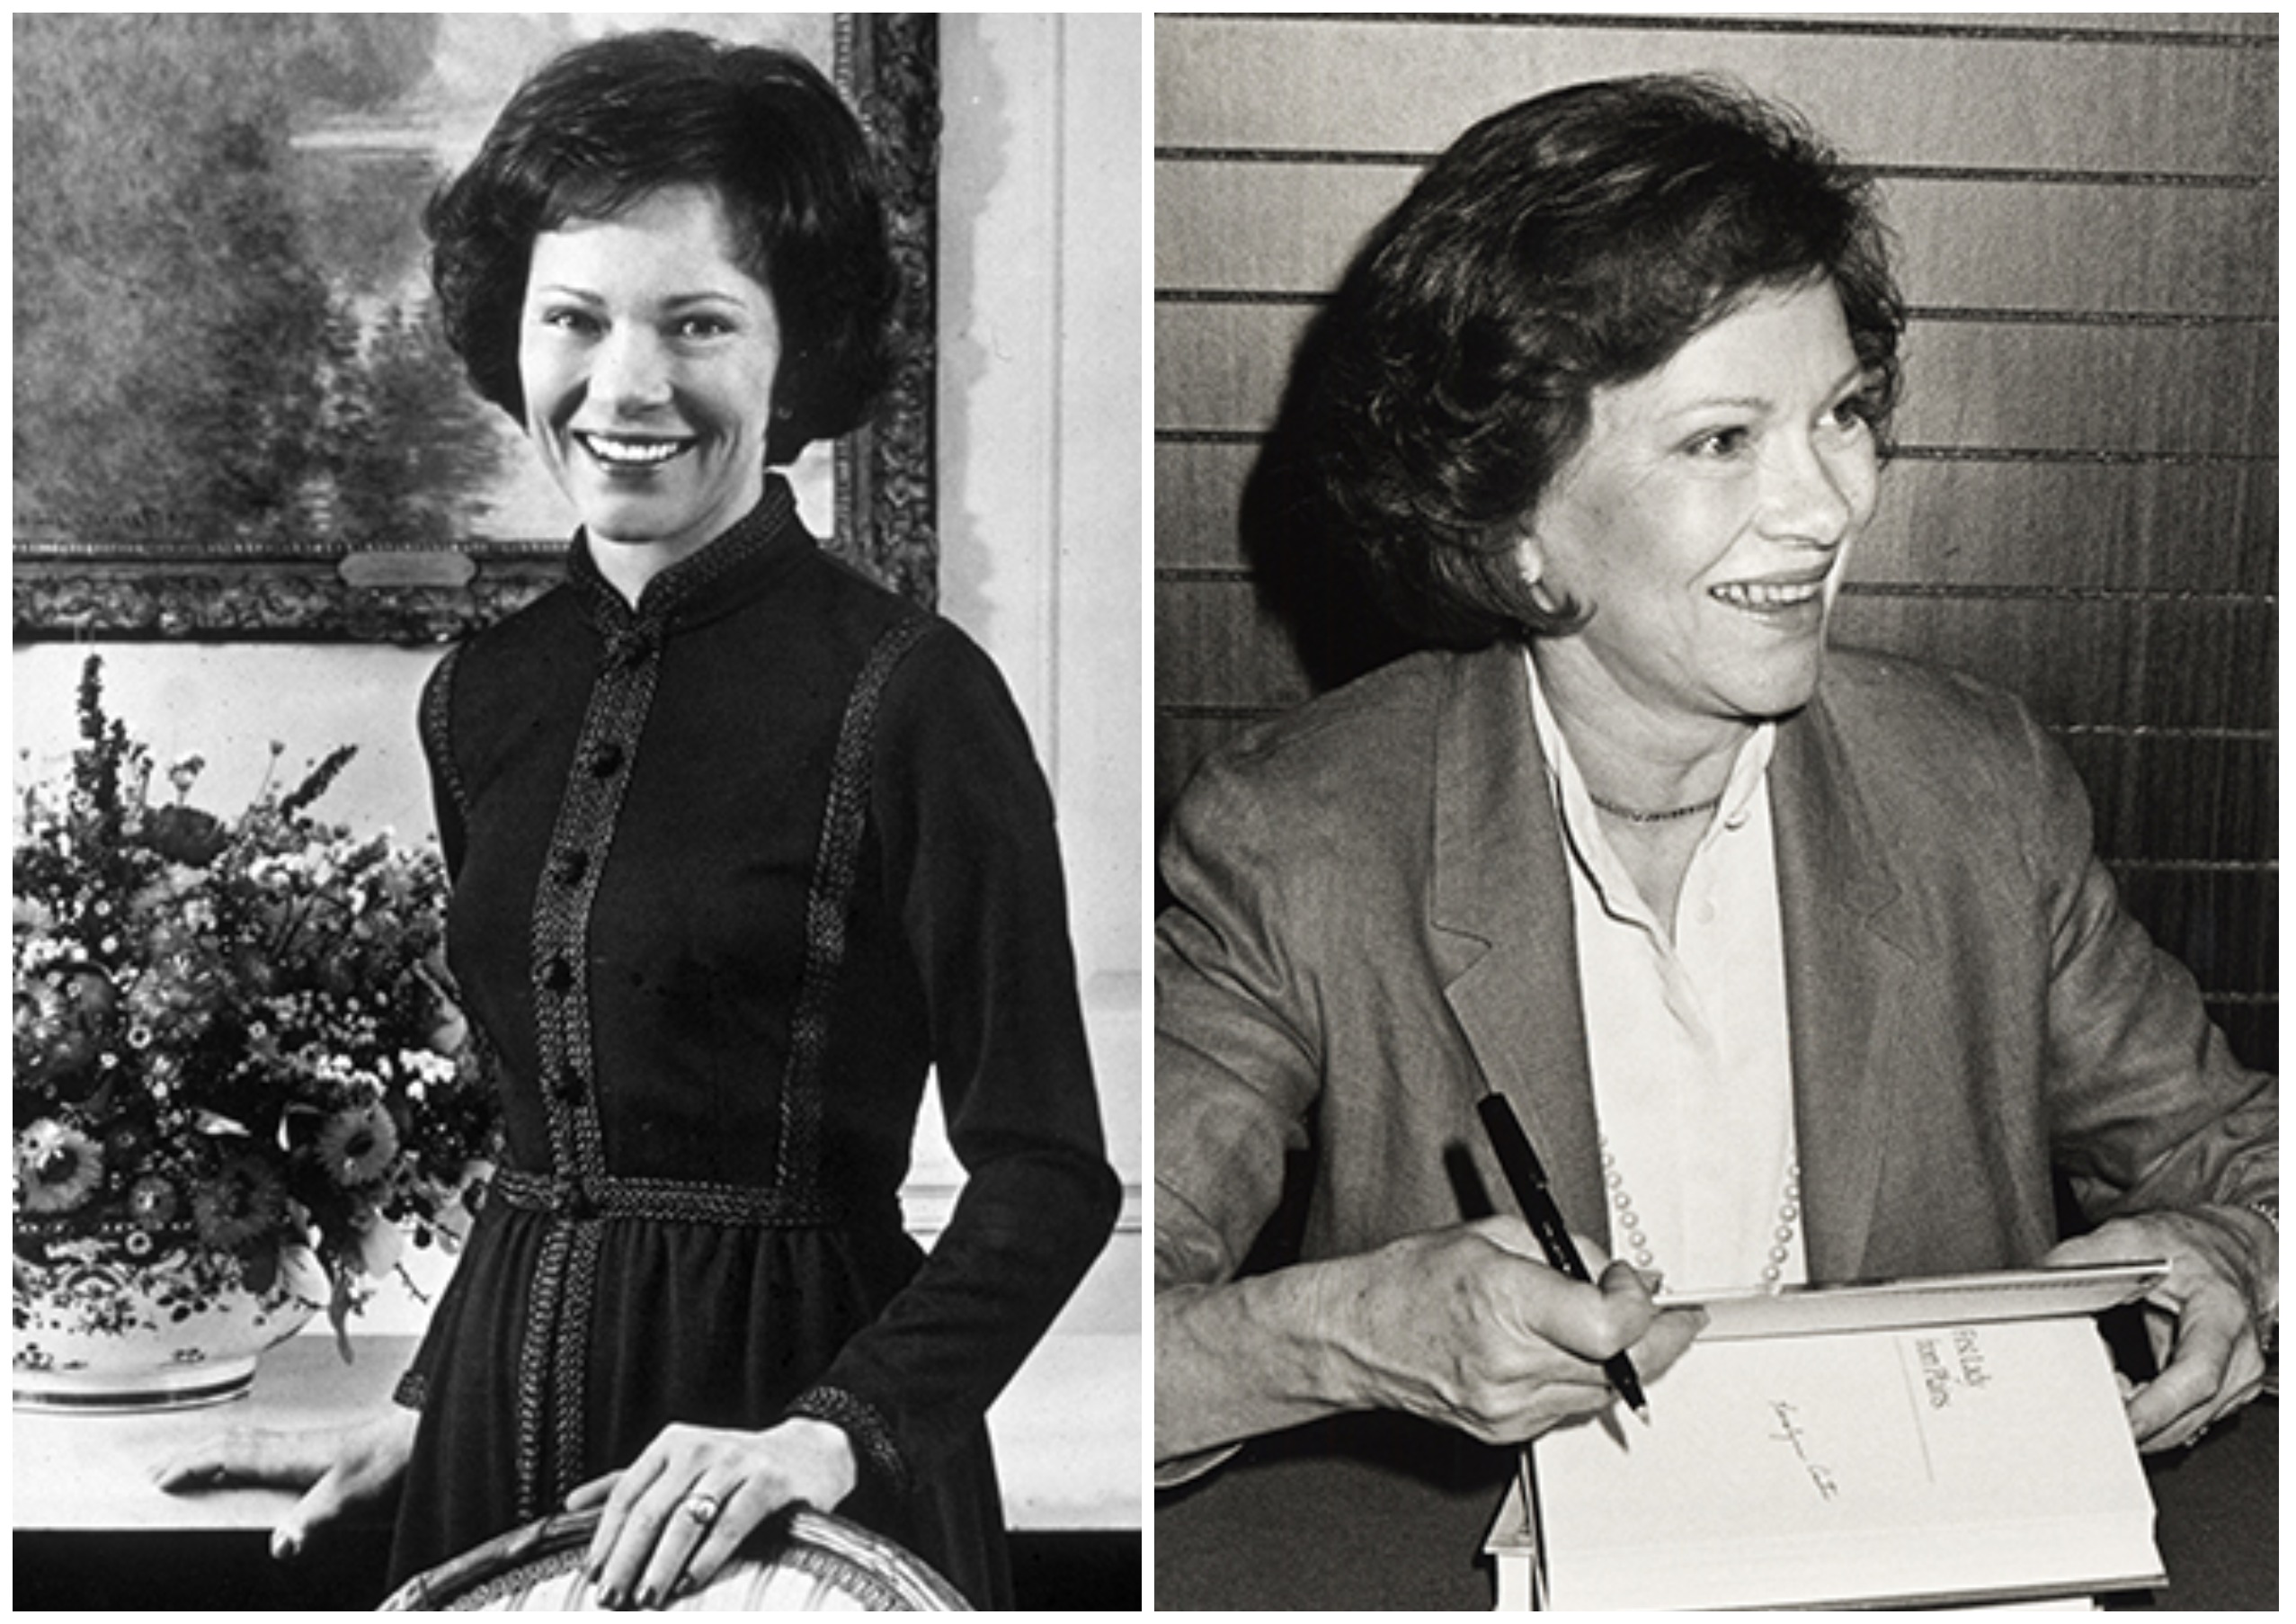 Birinchi xonim Rozalin Karter portreti, 1977-yil 18-fevral hamda o‘zining avtobiografik asari taqdimotida, 1984-yil